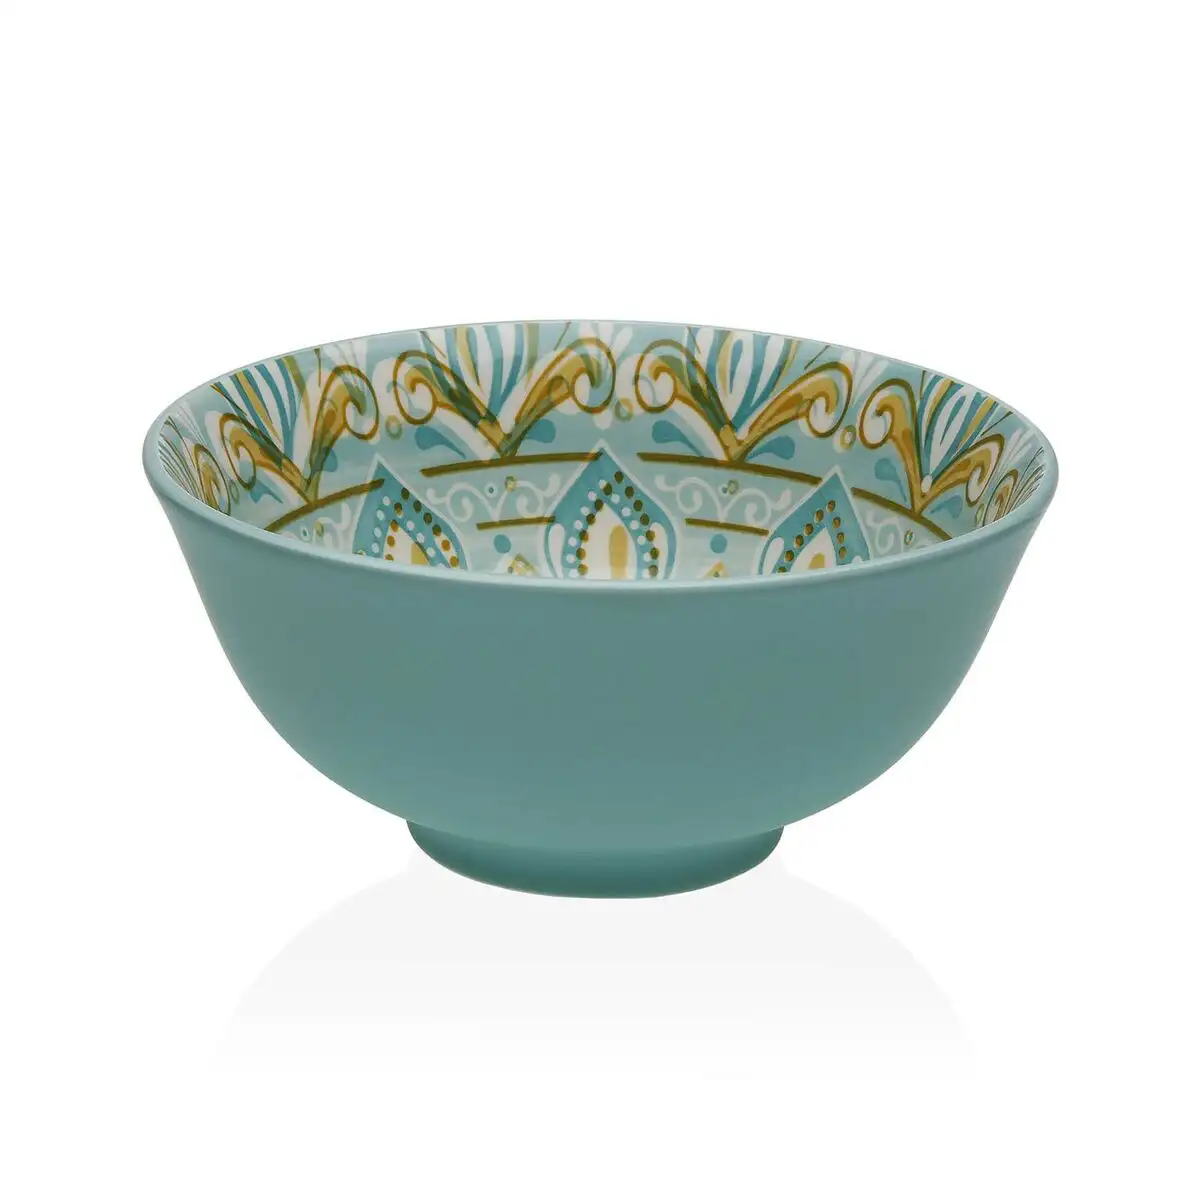 Bol versa bleu ceramique porcelaine 15 5 x 7 x 15 5 cm_7581. DIAYTAR SENEGAL - Votre Plaisir Shopping à Portée de Clic. Explorez notre boutique en ligne et trouvez des produits qui ajoutent une touche de bonheur à votre vie quotidienne.